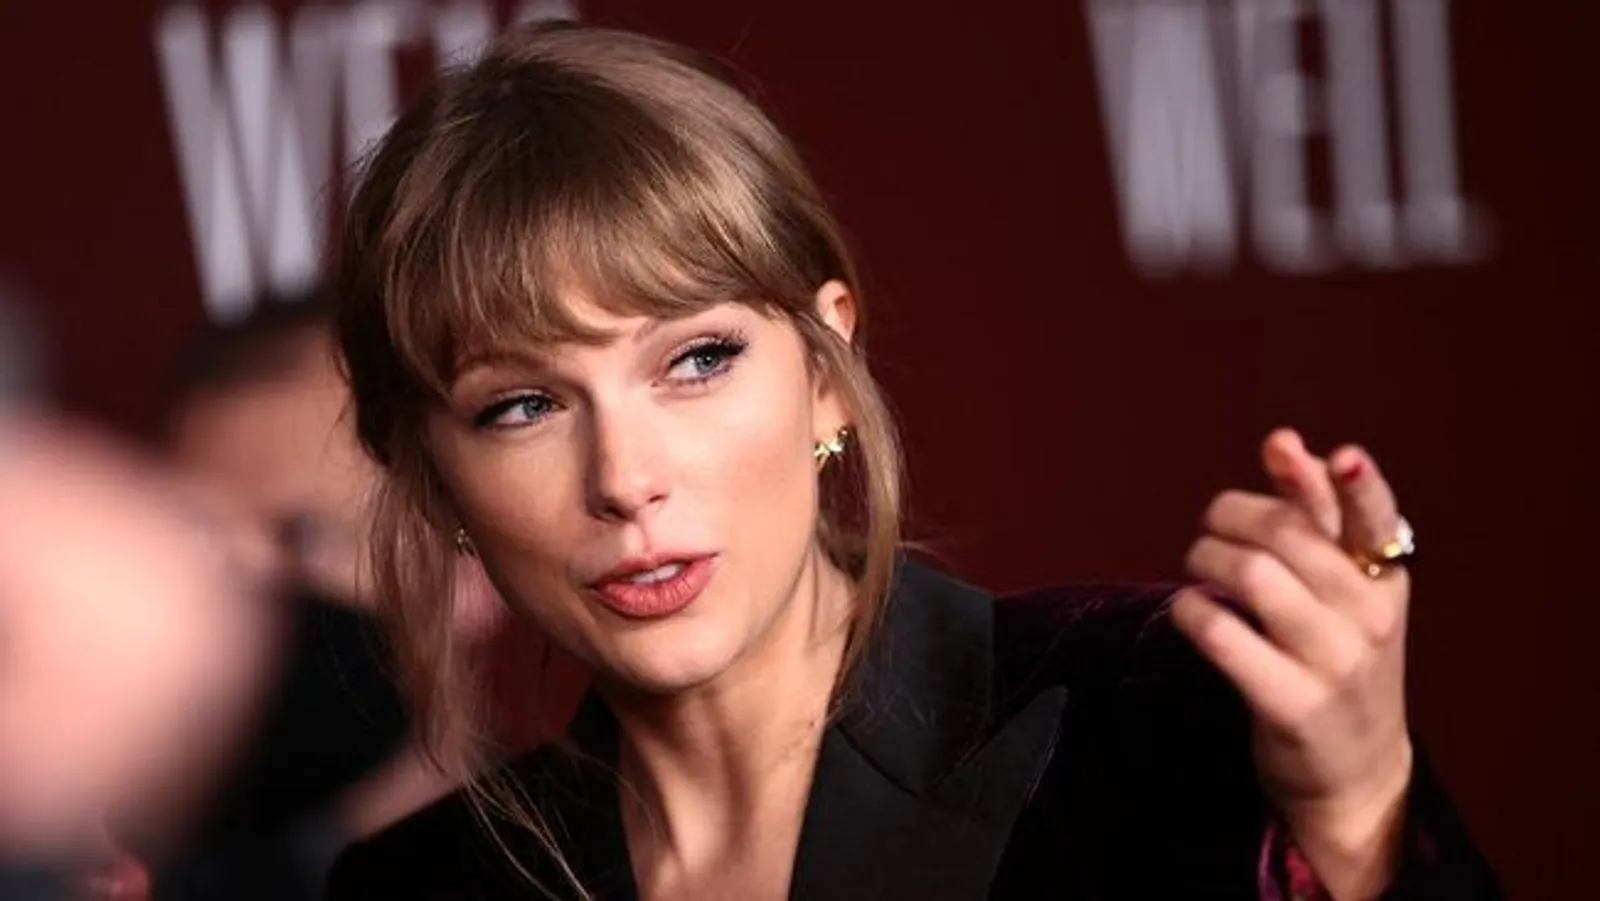 Dituding Damon Albarn Tak Tulis Lagu Sendiri, Taylor Swift: "F—ed Up"